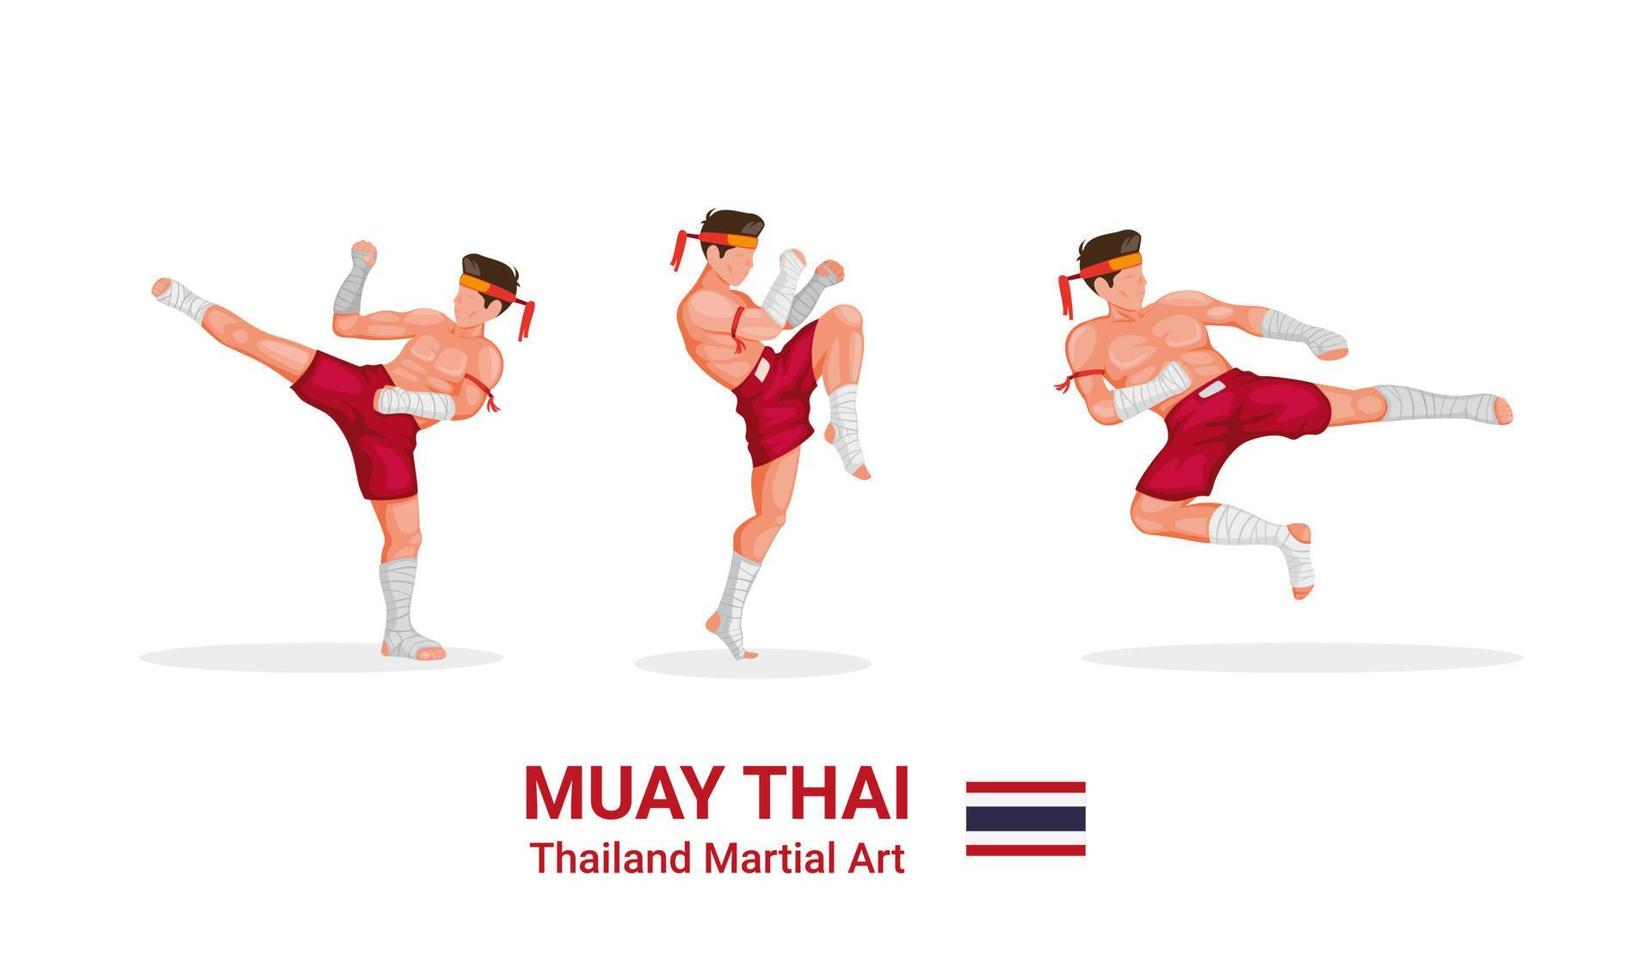 muay thai - arte marcial tradicional del boxeo tailandés del icono de colección de figuras de tailandia en vector de ilustración plana de dibujos animados aislado en fondo blanco